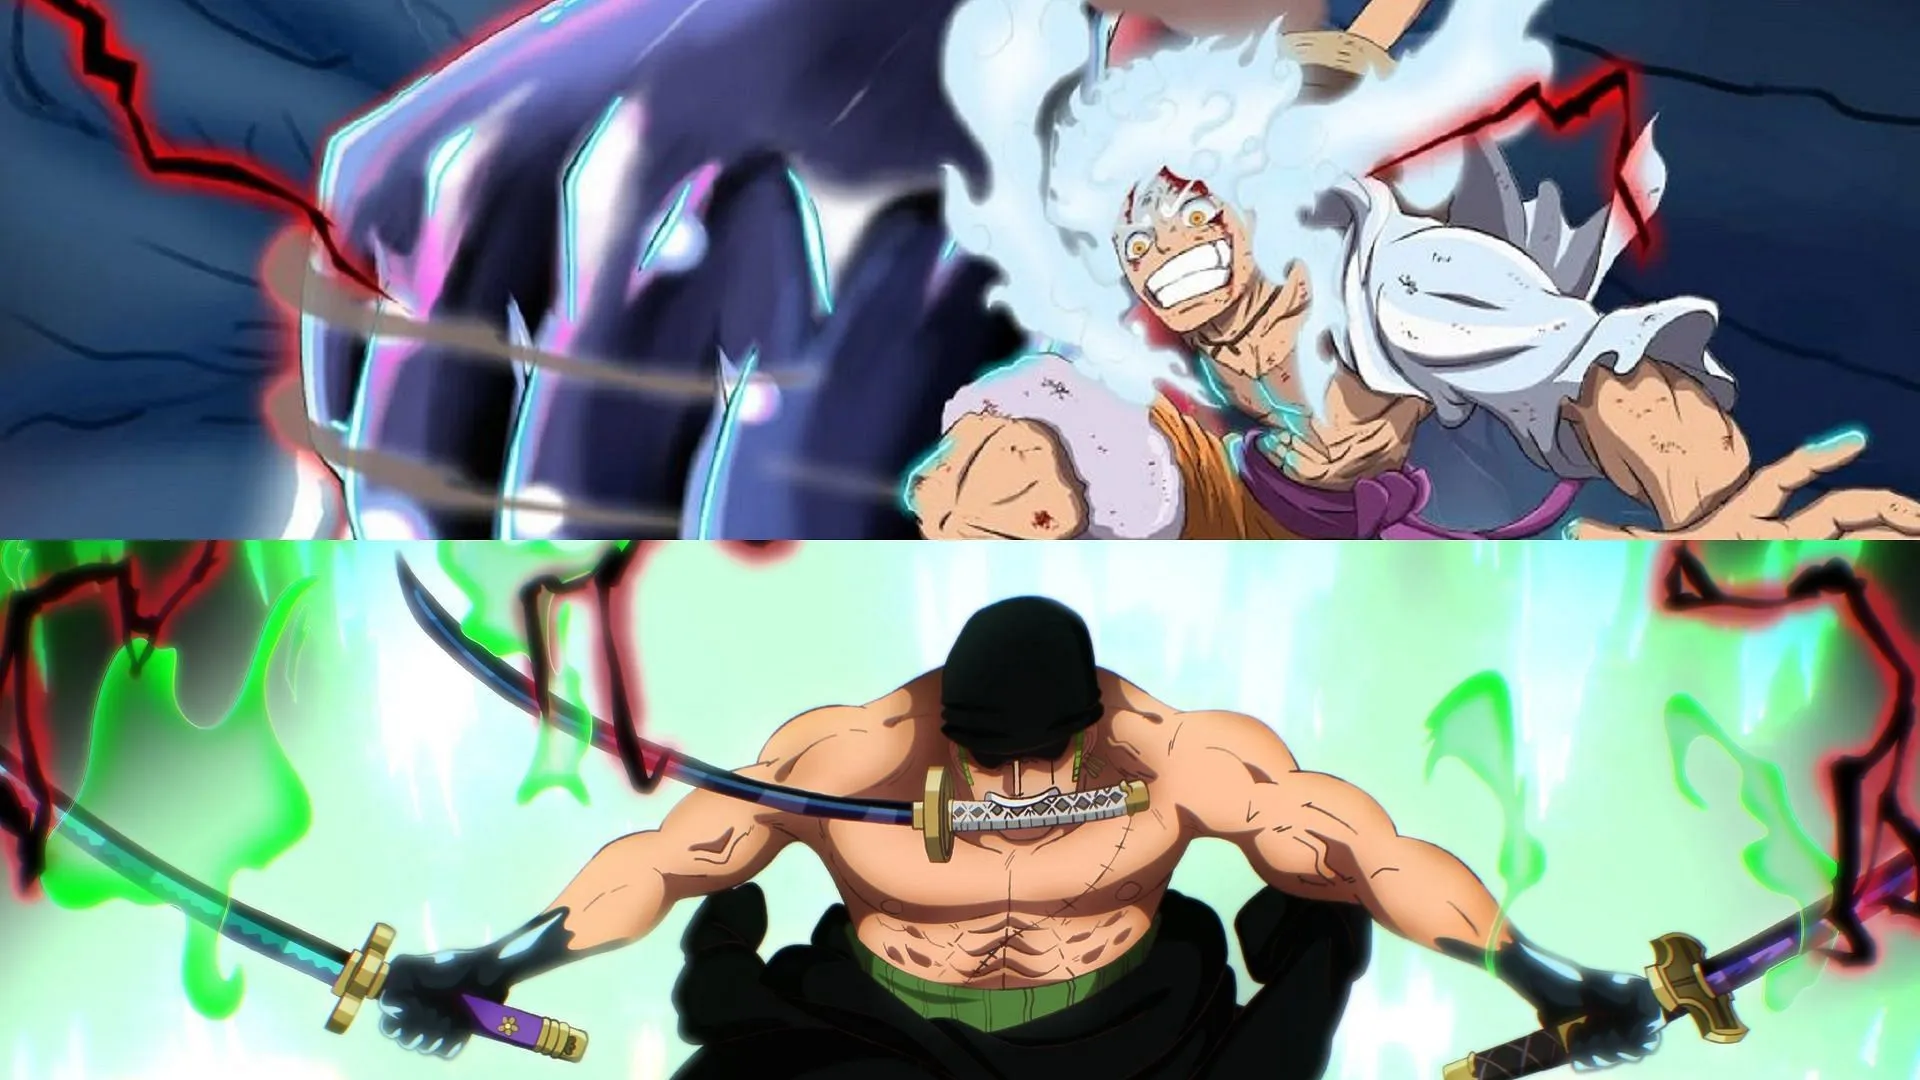 Al poder usar el Haki de Advanced Conqueror, Luffy y Zoro se encuentran entre los personajes más fuertes de la serie (Imagen a través de Eiichiro Oda/Shueisha, One Piece)